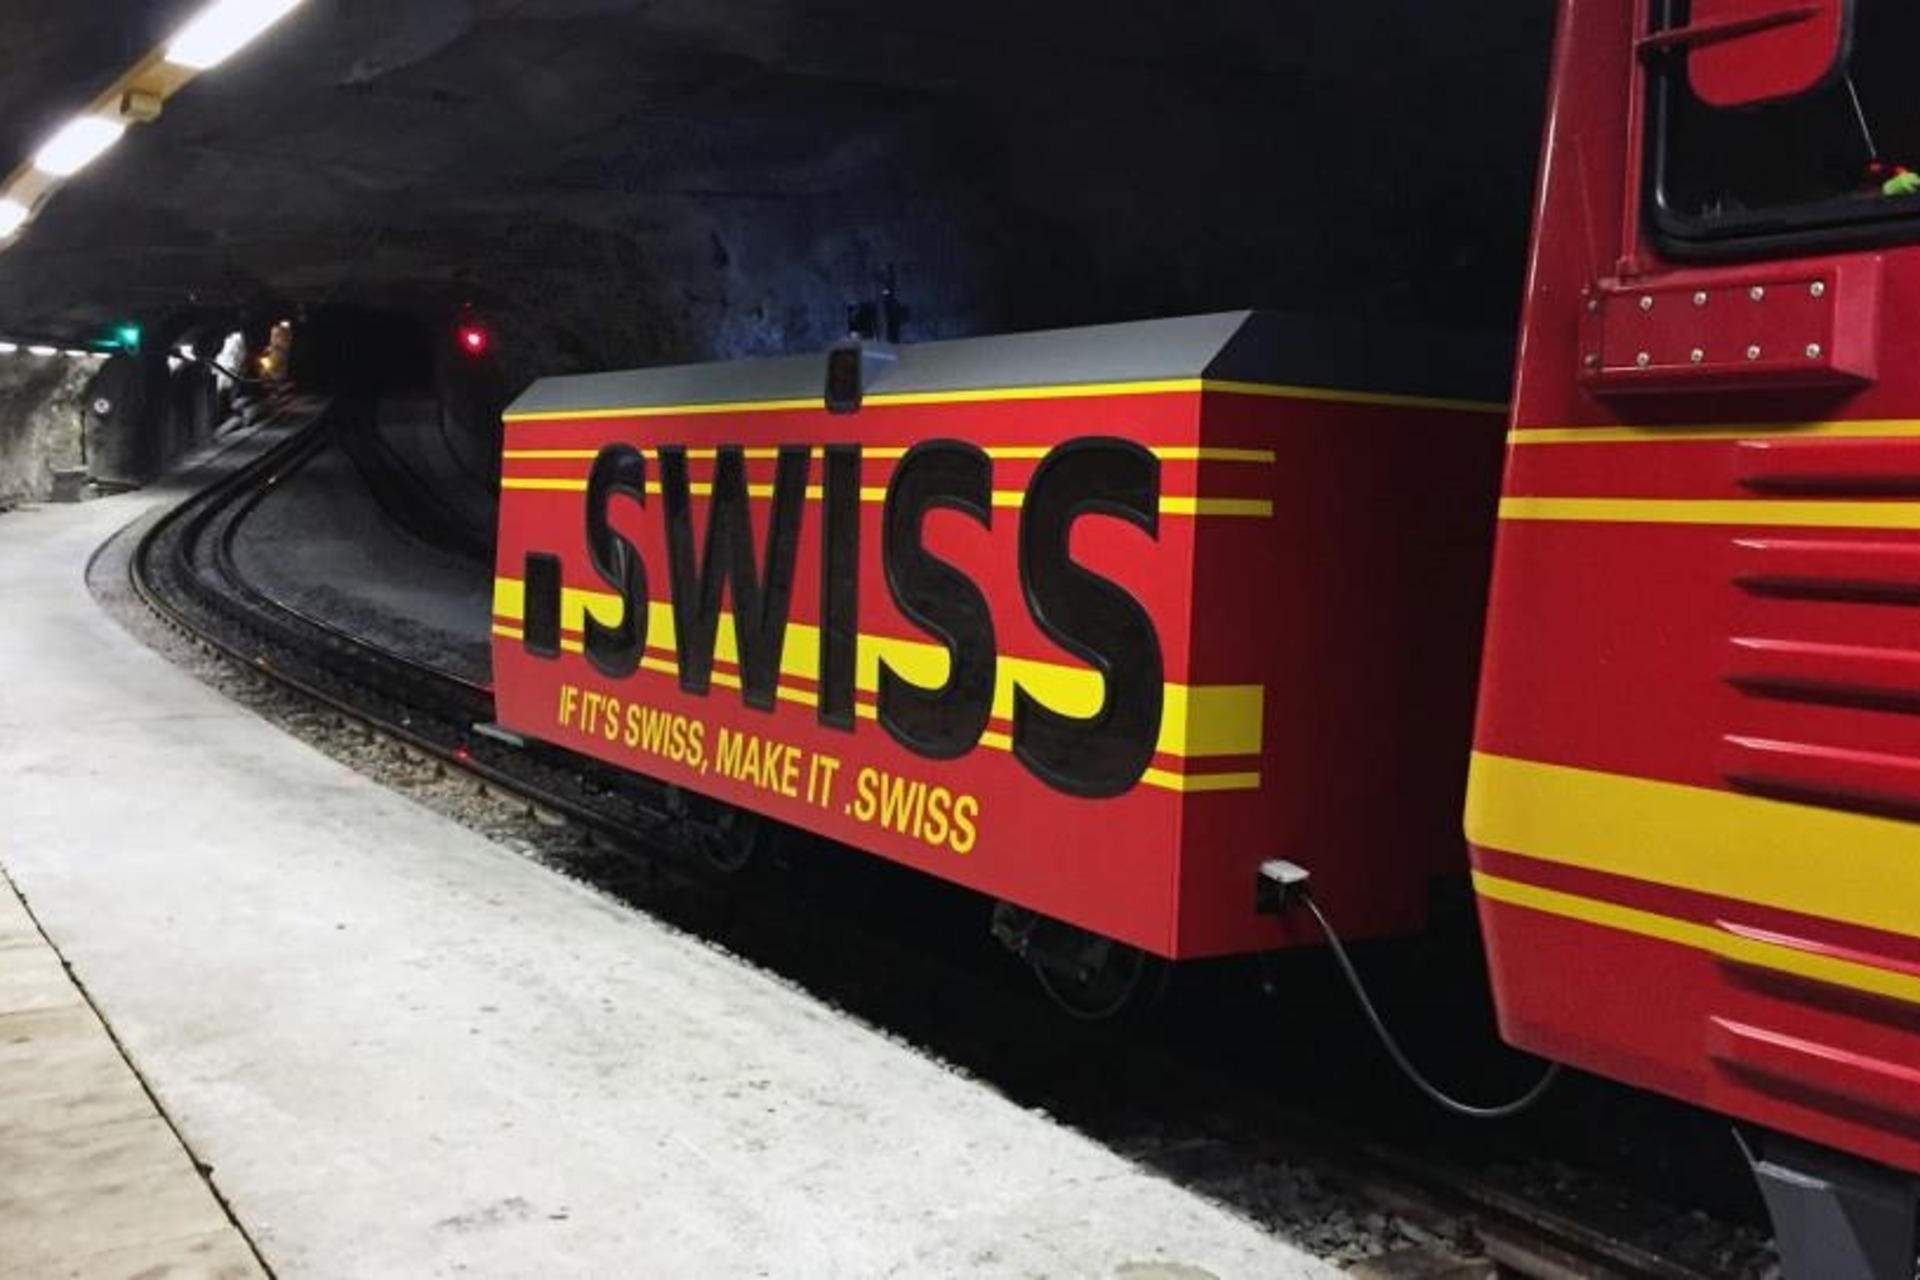 .swiss: il TLD “.swiss” della Svizzera rappresentato sul tender di un treno della ferrovia del passo dello Jungfraujoch